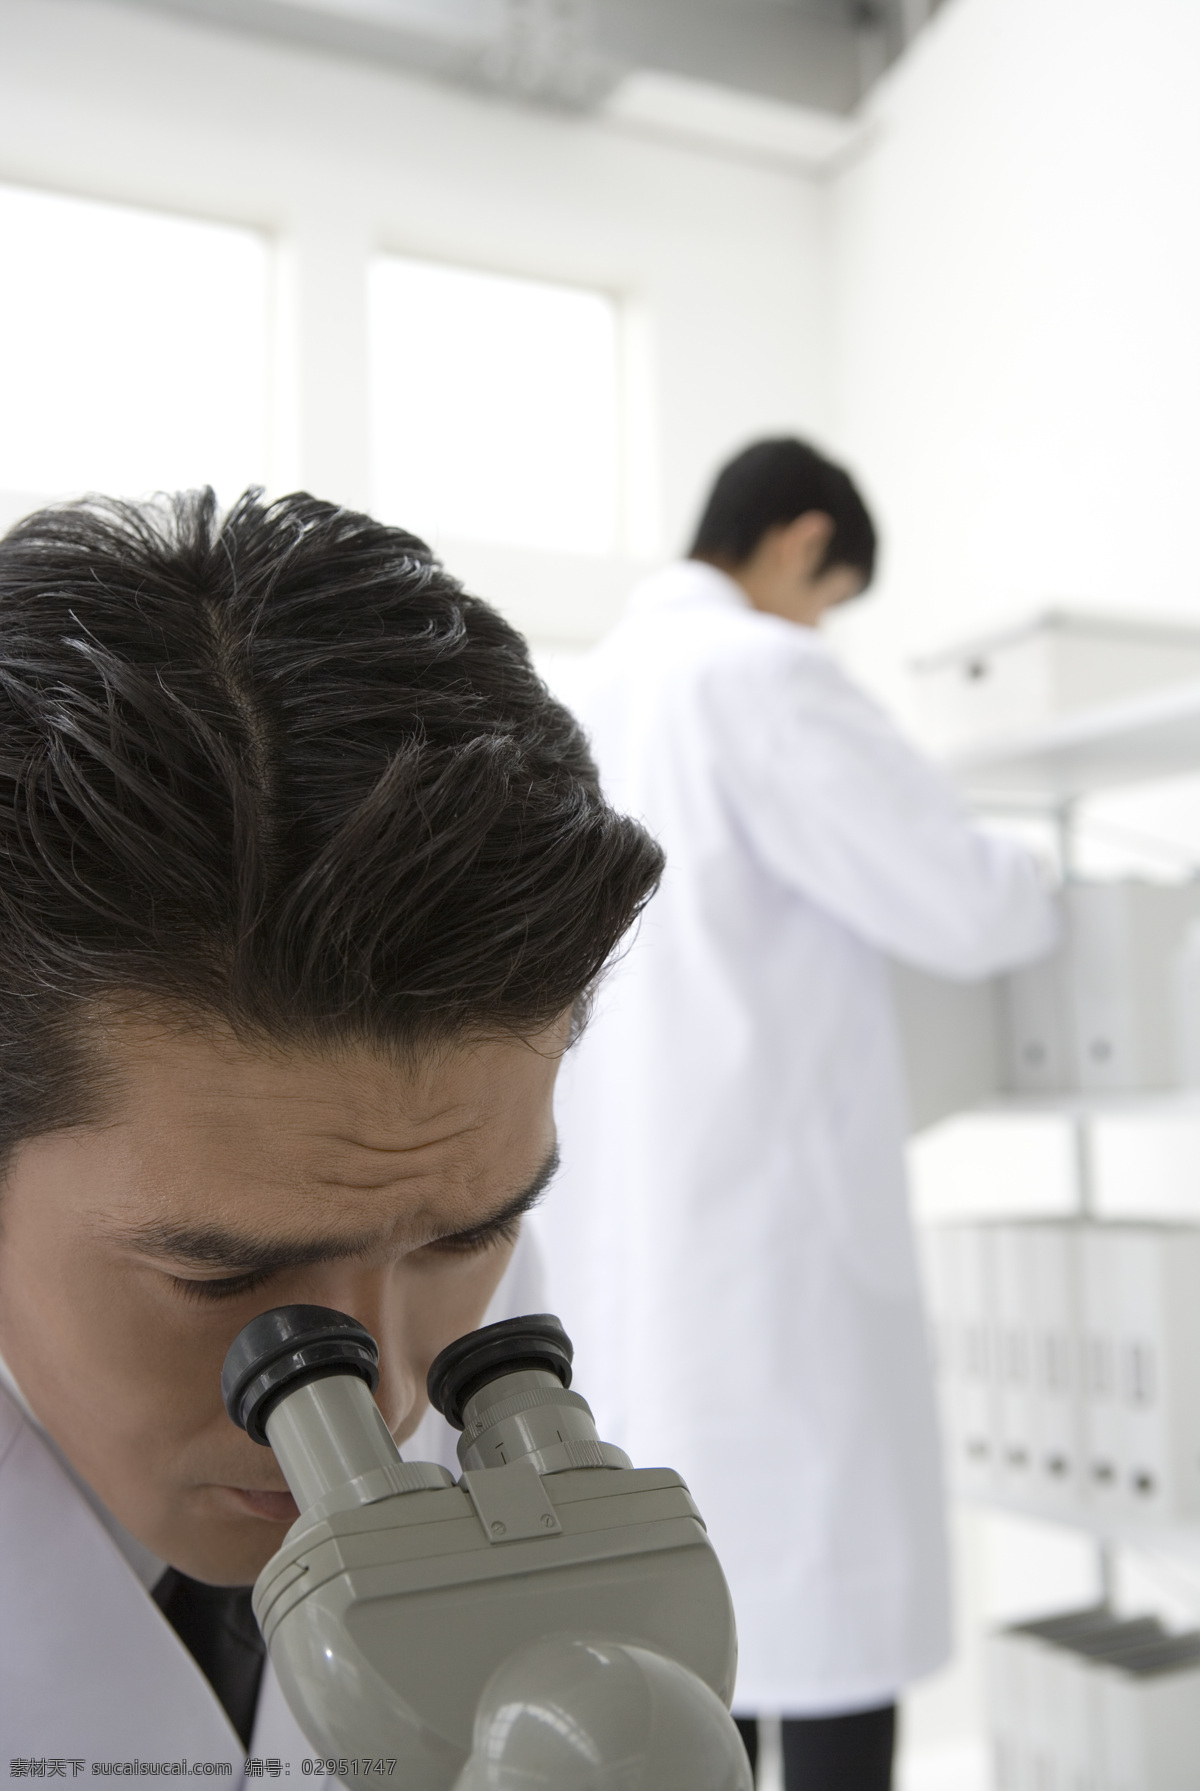 实验室 工作 科学家 研究 做实验 职业人物 实验 化验 科学 认真 专注 显微镜 容器 仪器 男人 男科学家 生活人物 人物图片